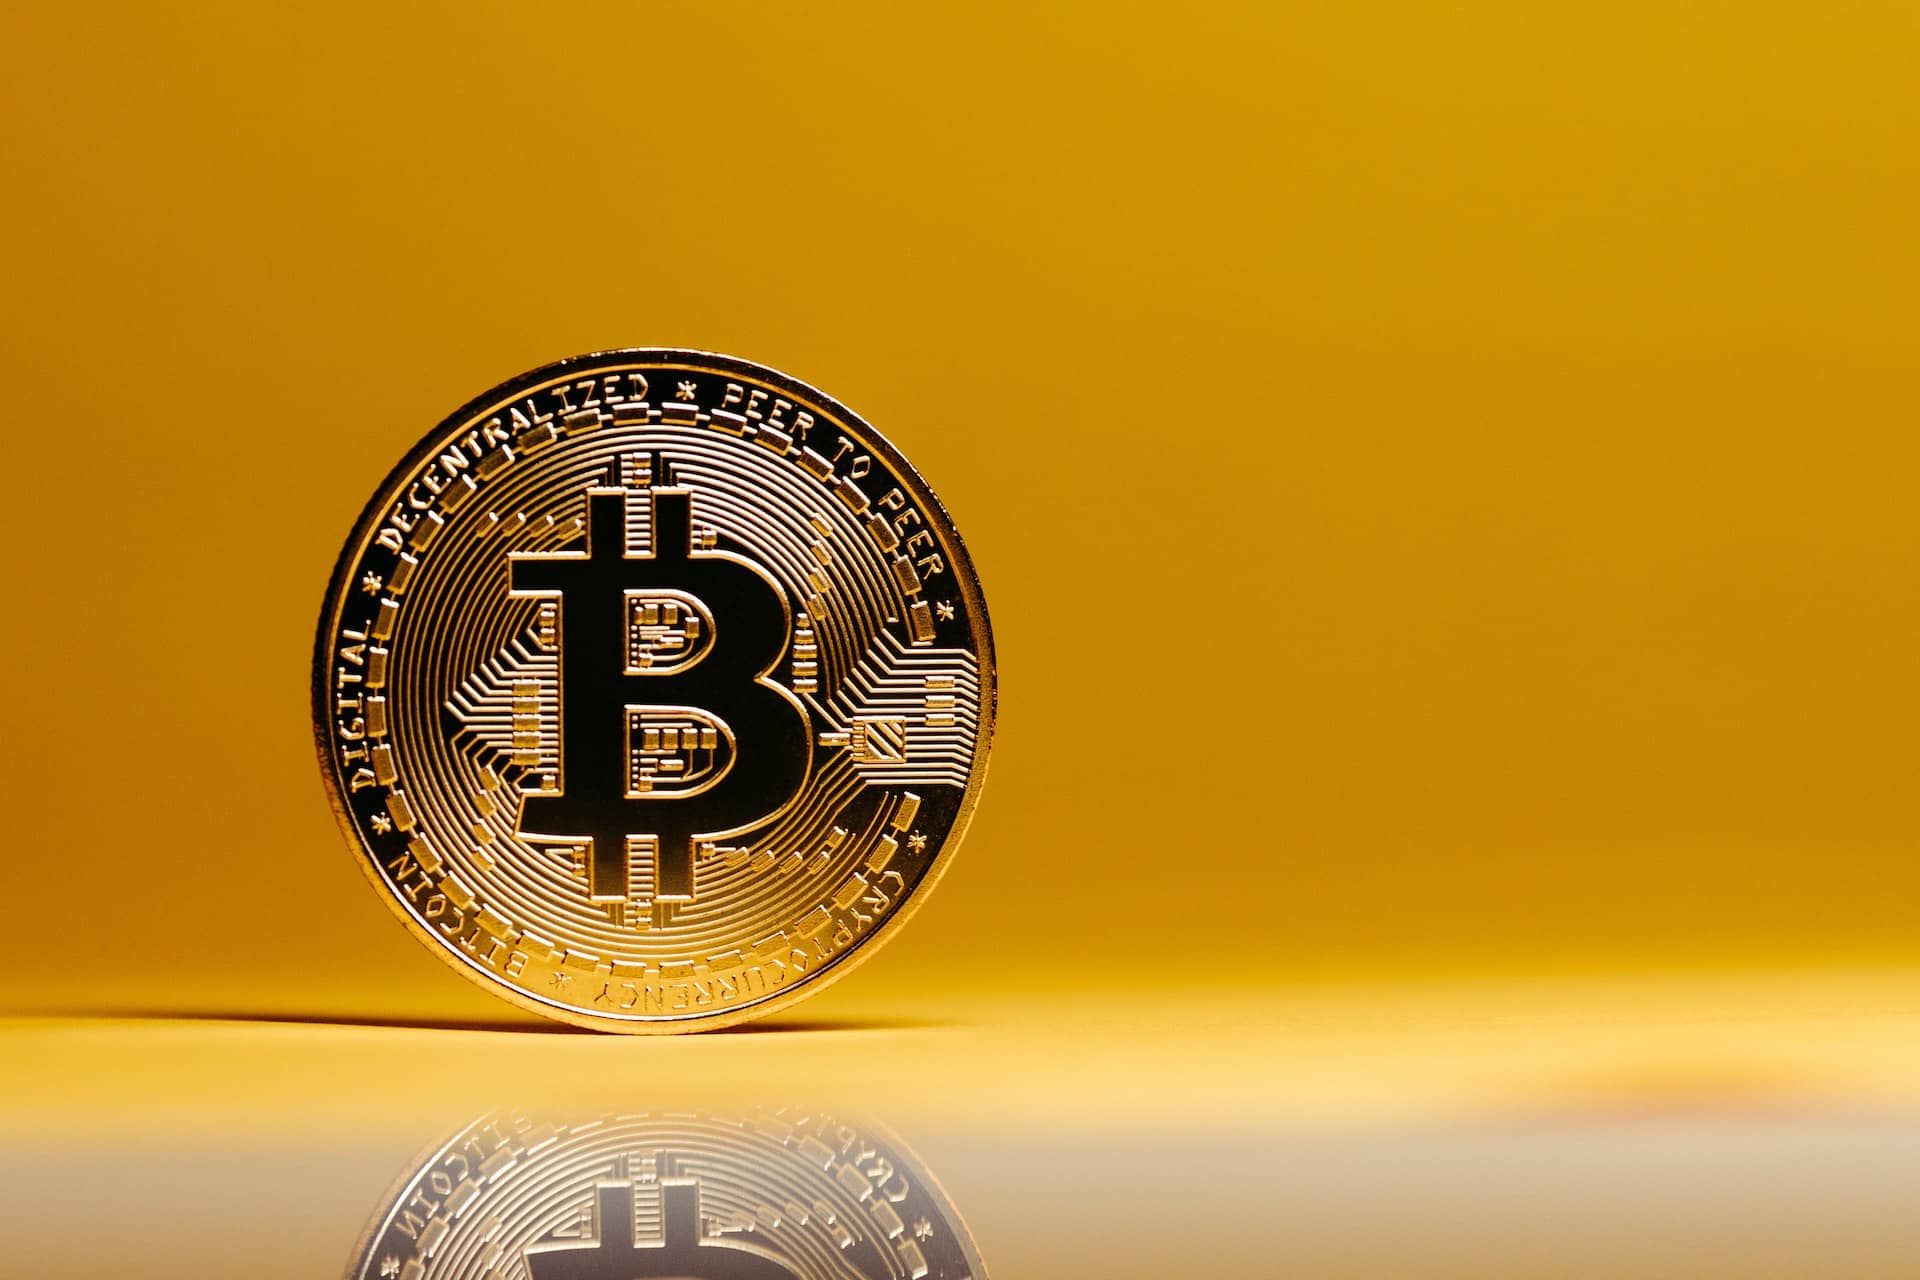 Vốn hóa thị trường của Bitcoin sẽ là bao nhiêu nếu BTC đạt 100.000 USD?